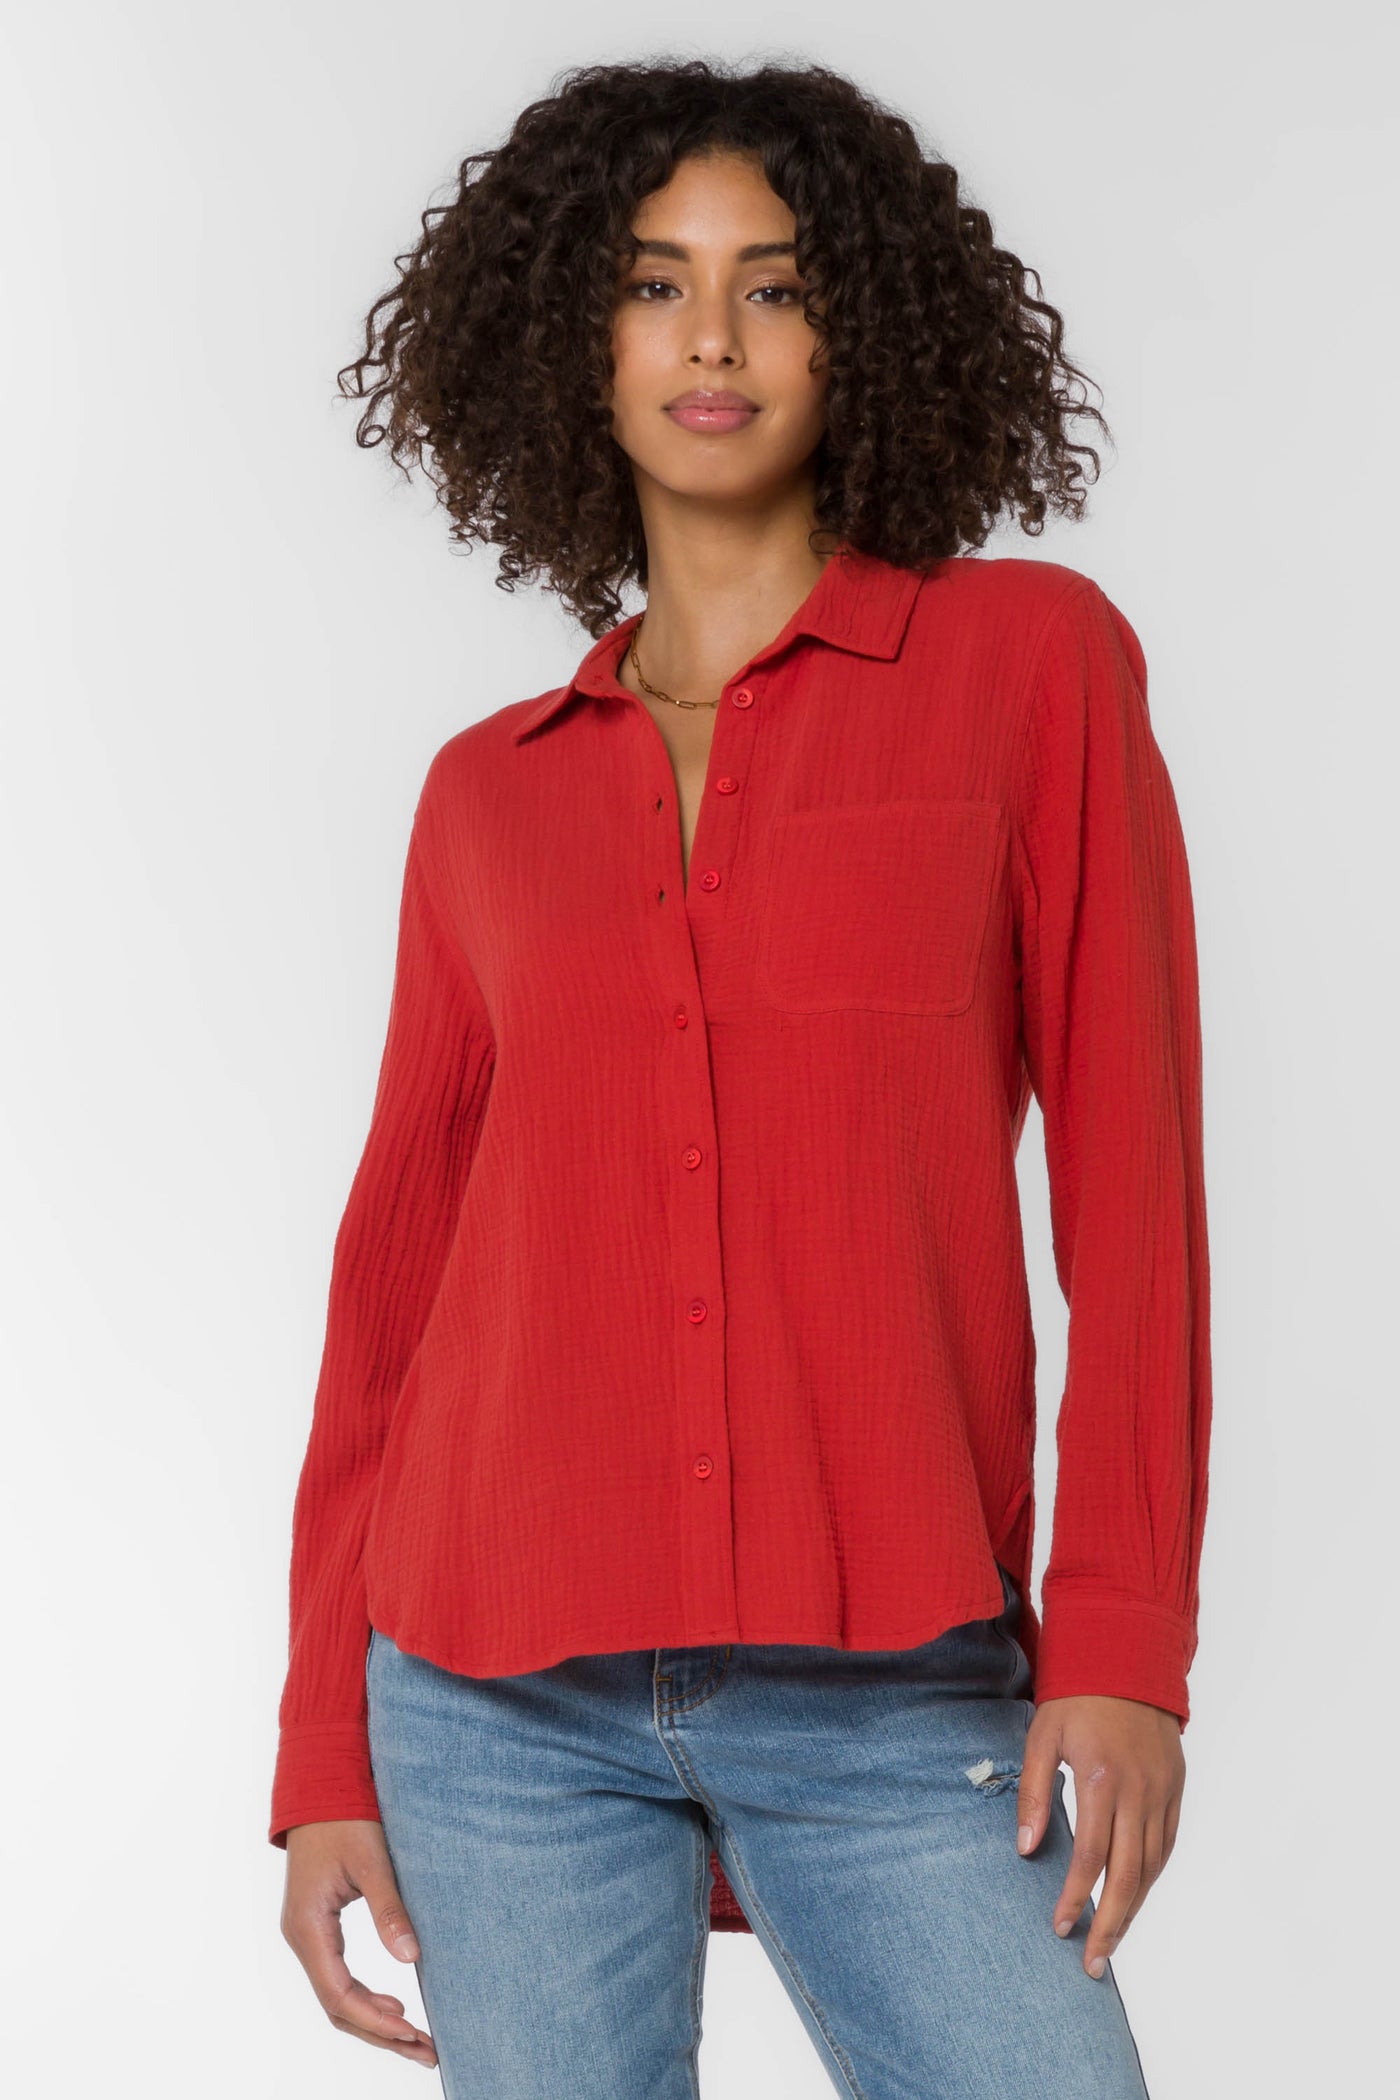 Bennett Red Shirt - Tops - Velvet Heart Clothing